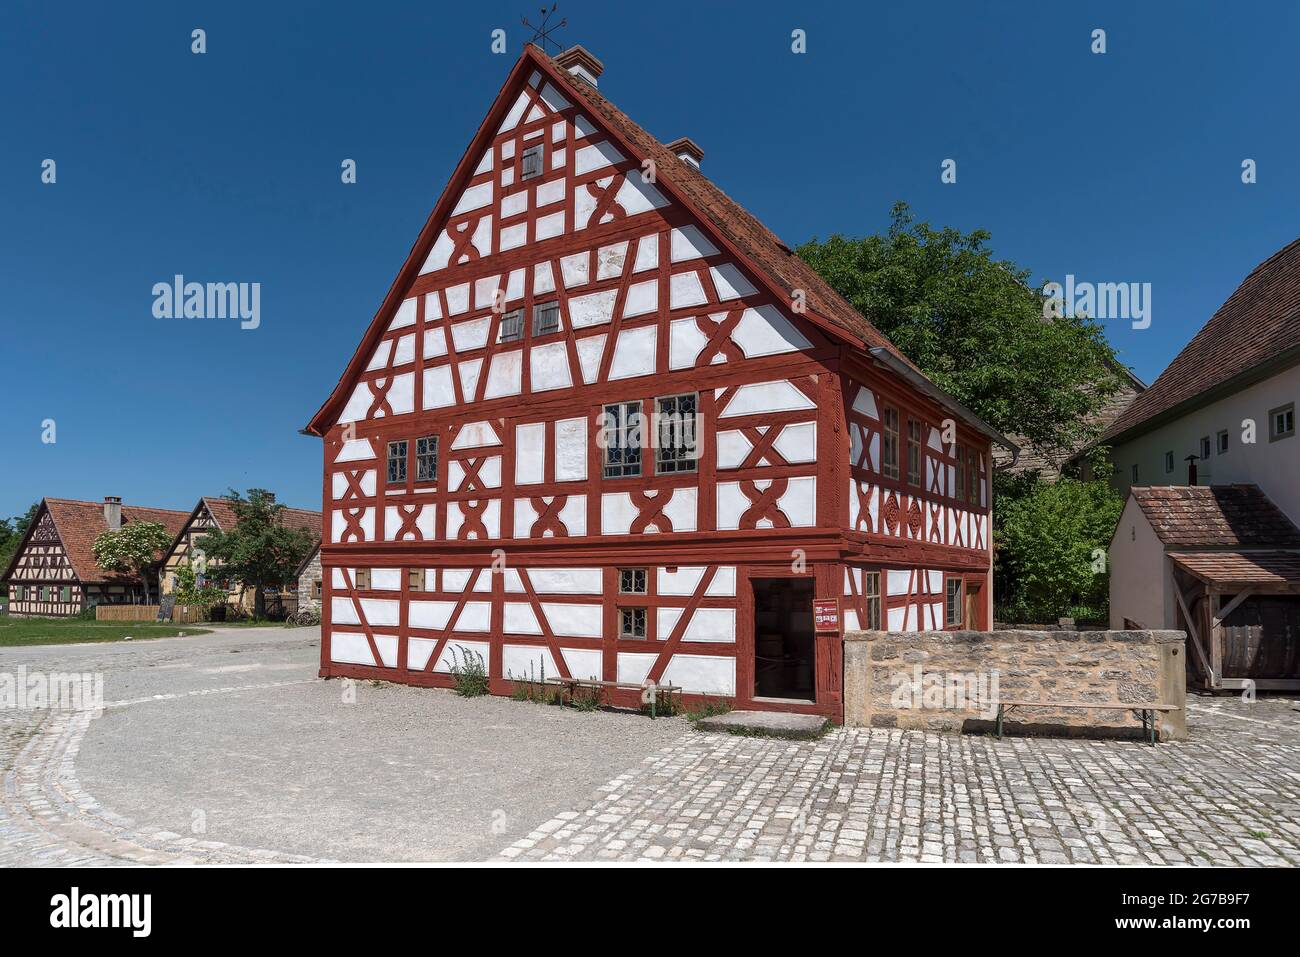 Historisches Fachwerkhaus, Fränkisches Freilichtmuseum, Bad Windsheim,  Mittelfranken, Bayern, Deutschland Stockfotografie - Alamy